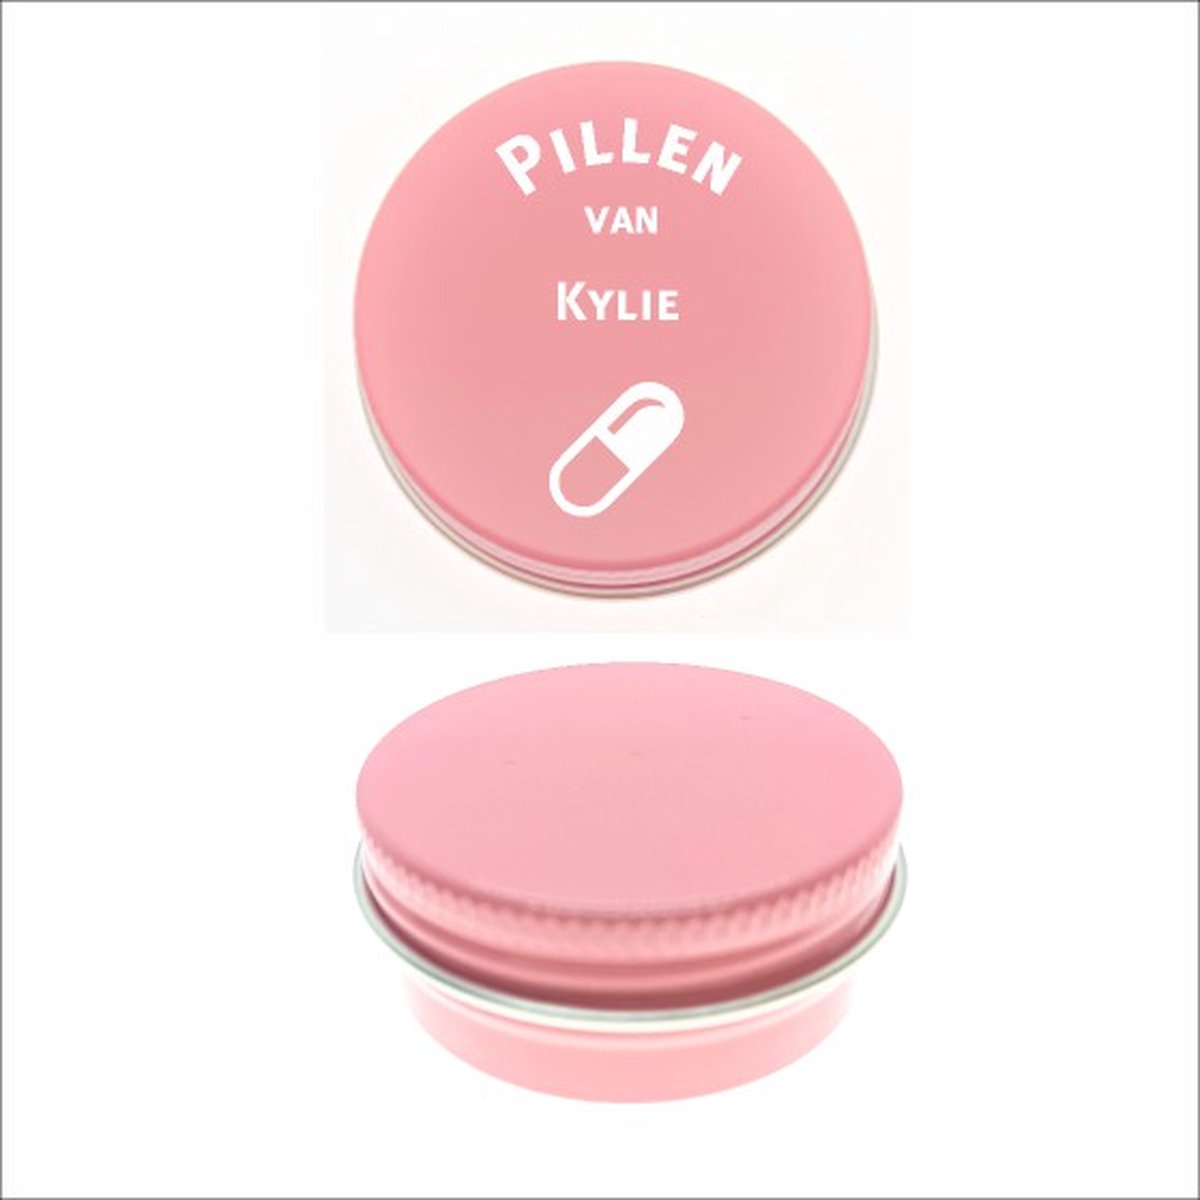 Pillen Blikje Met Naam Gravering - Kylie